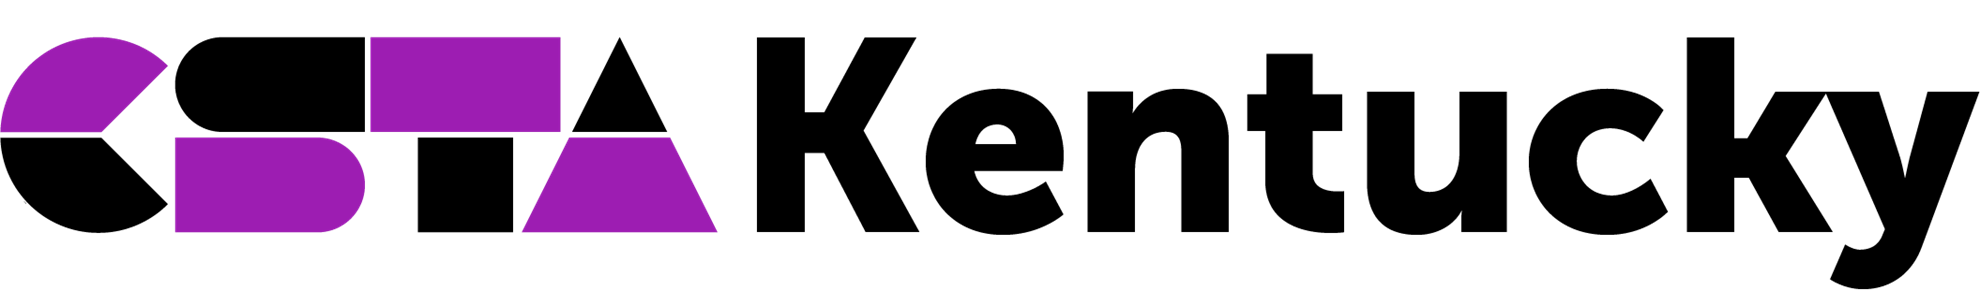 CSTA Kentucky logo